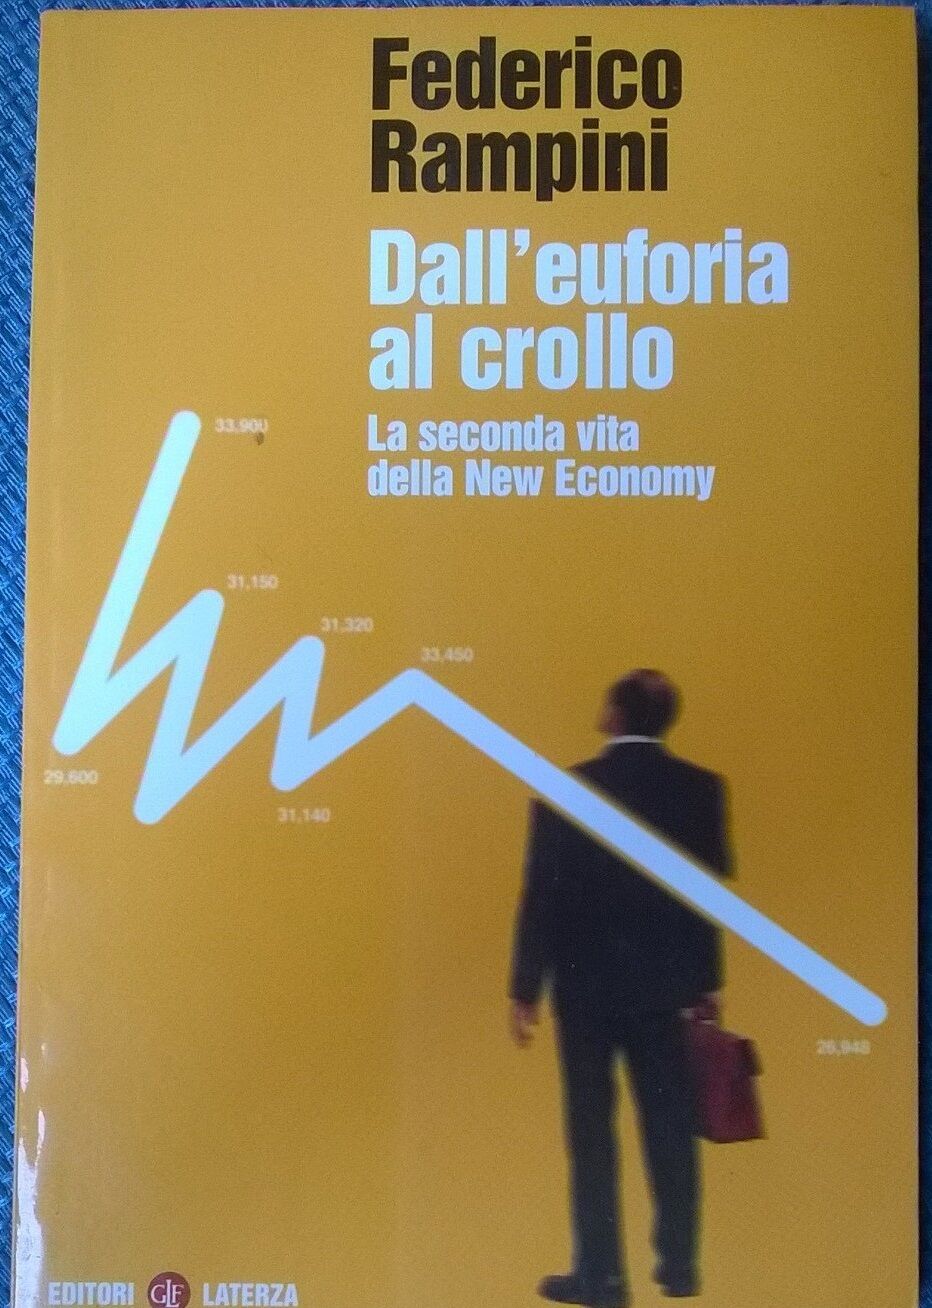 DalL'euforia al crollo La seconda vita della New Economy -Rampini Laterza 2001L  libro usato